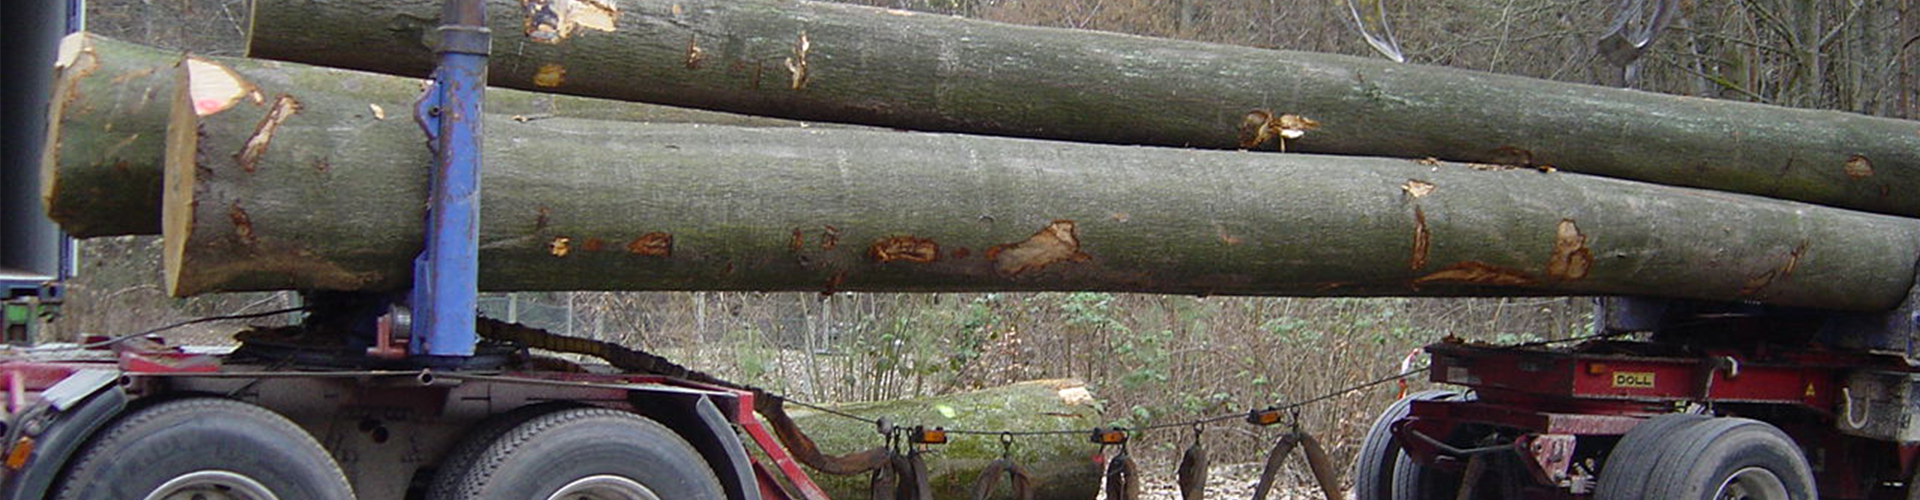 Nella foto si può vedere il trasporto su tronchi d'albero